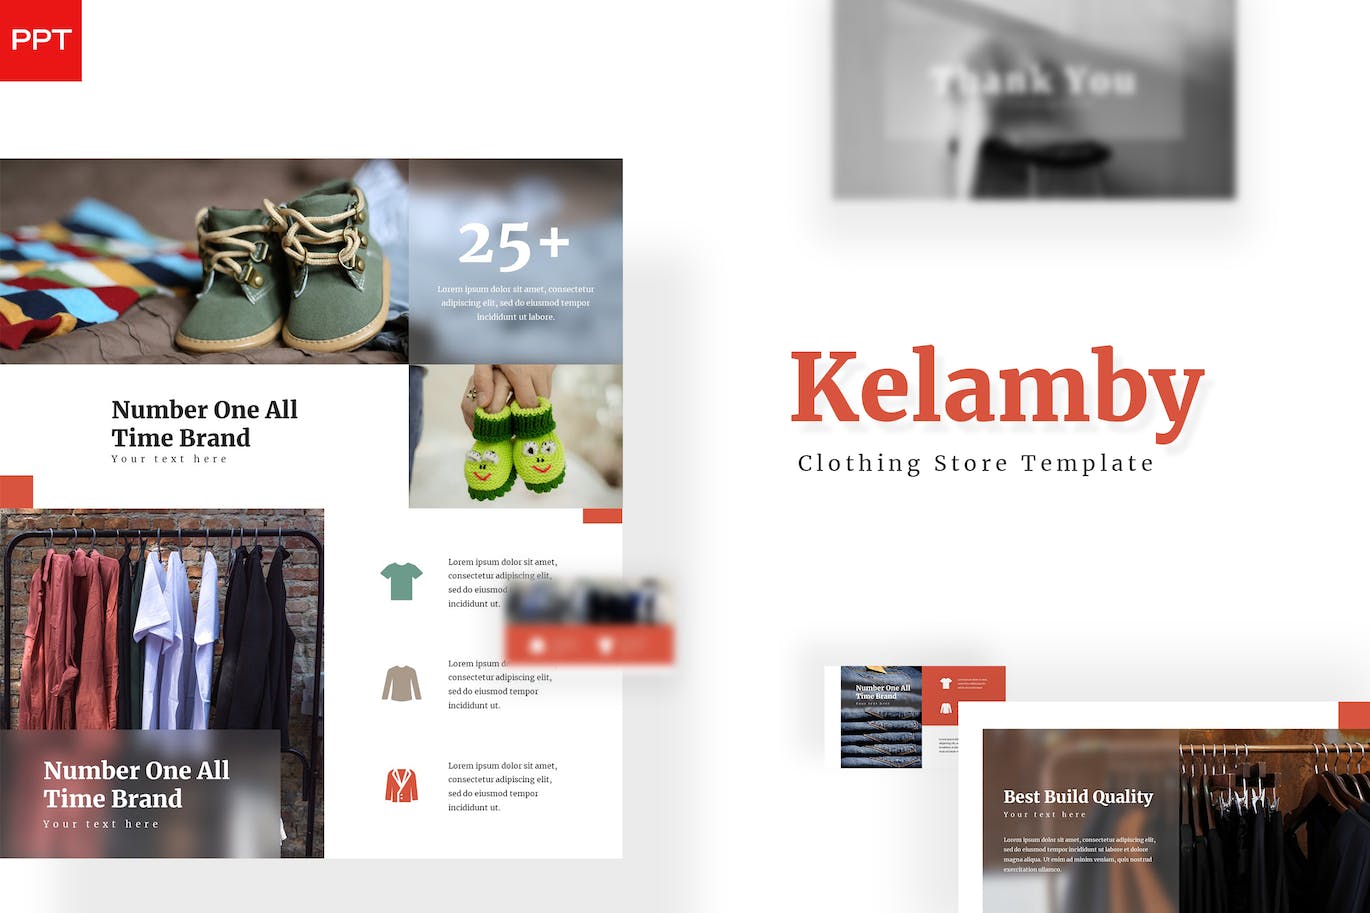 服装鞋店产品ppt幻灯片设计模板 Kelamby – Powerpoint Template 幻灯图表 第1张